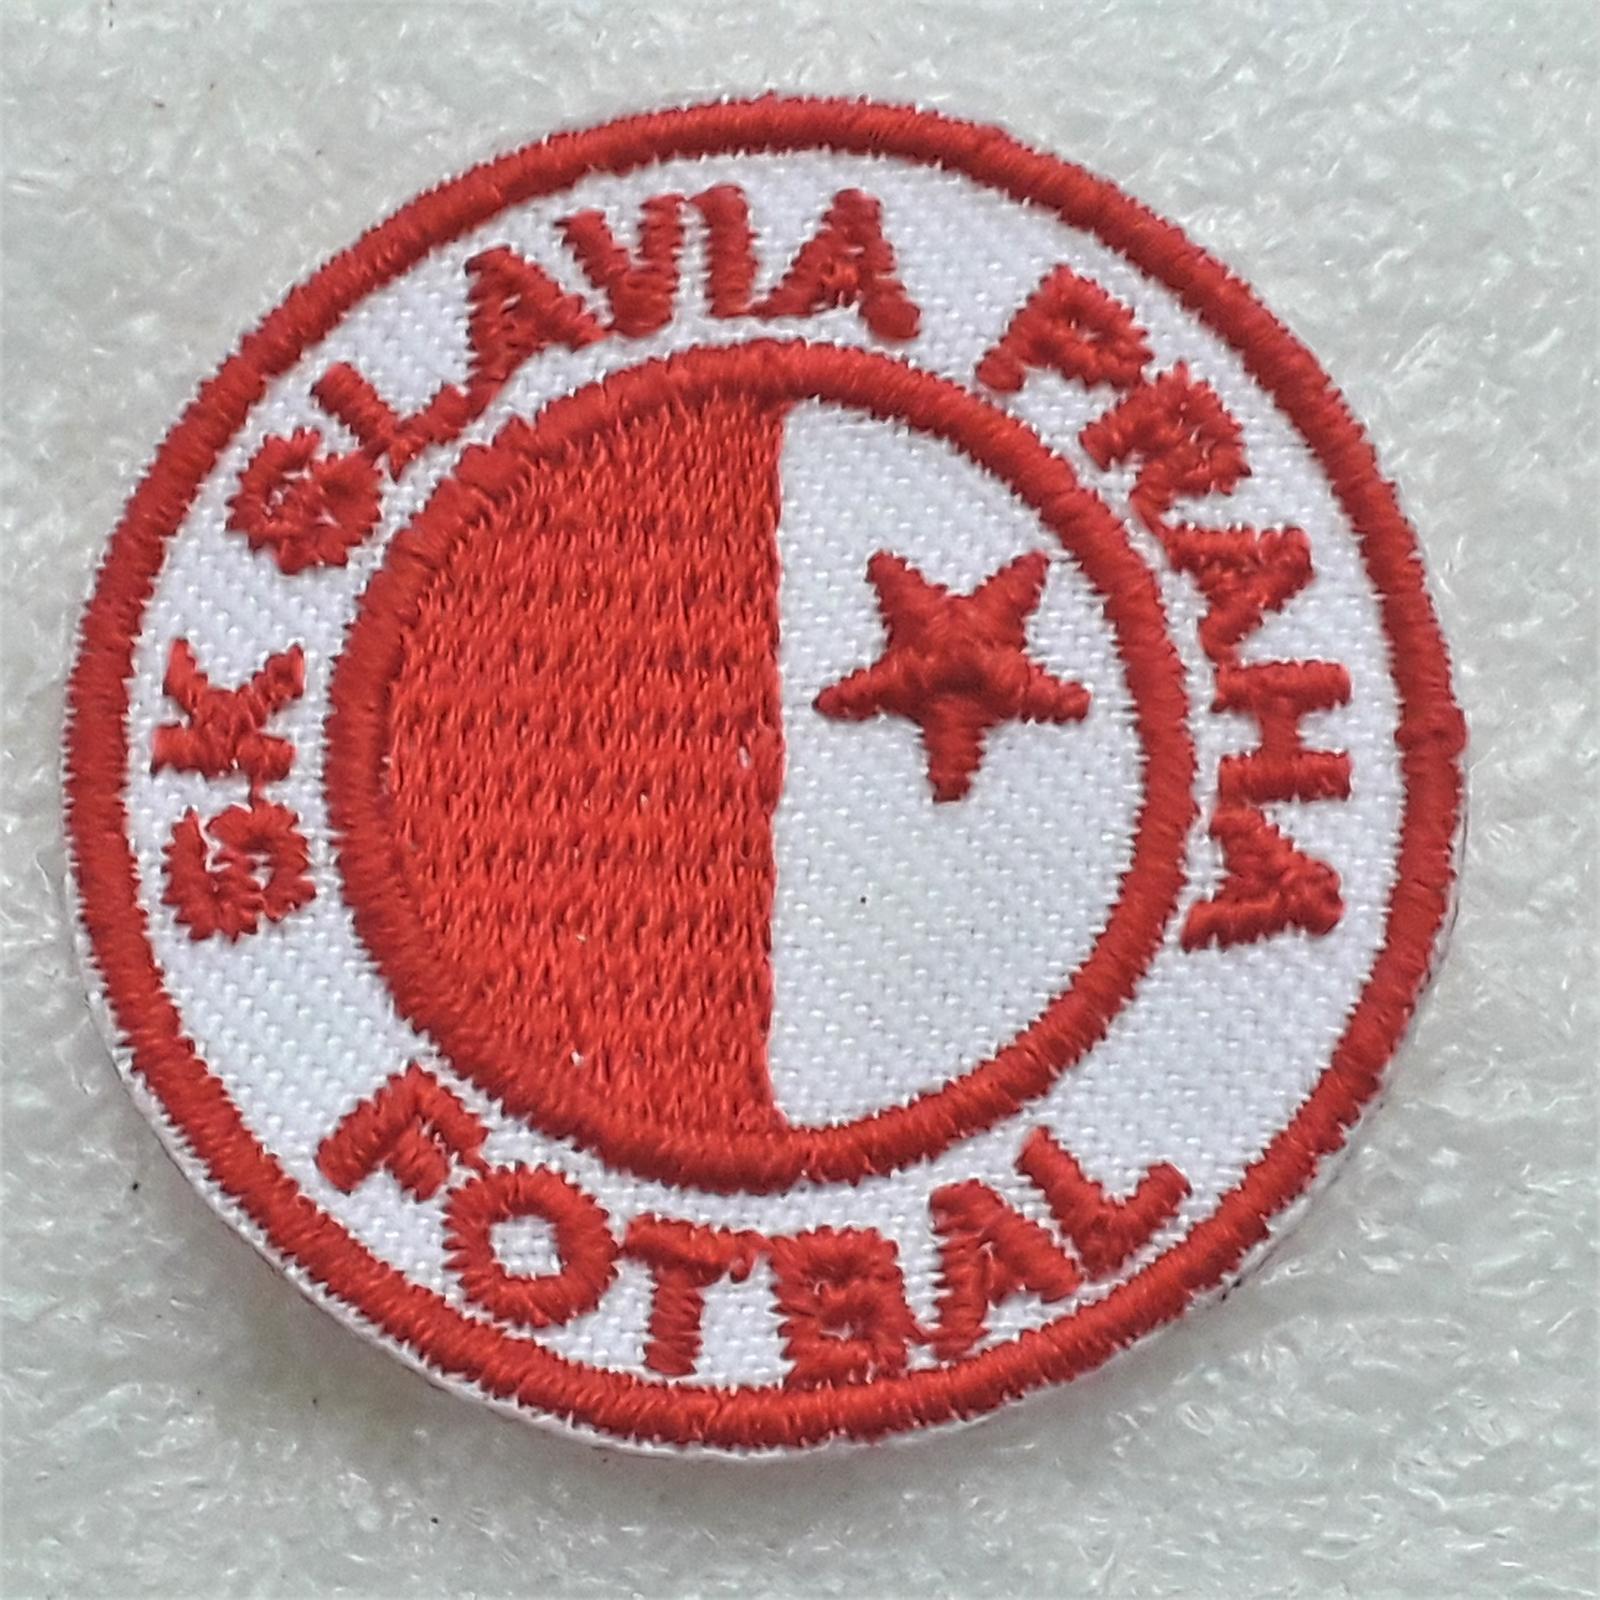 Celovyšitá Nášivka SK Slavia Praha fotbal - Rudná, Praha-západ